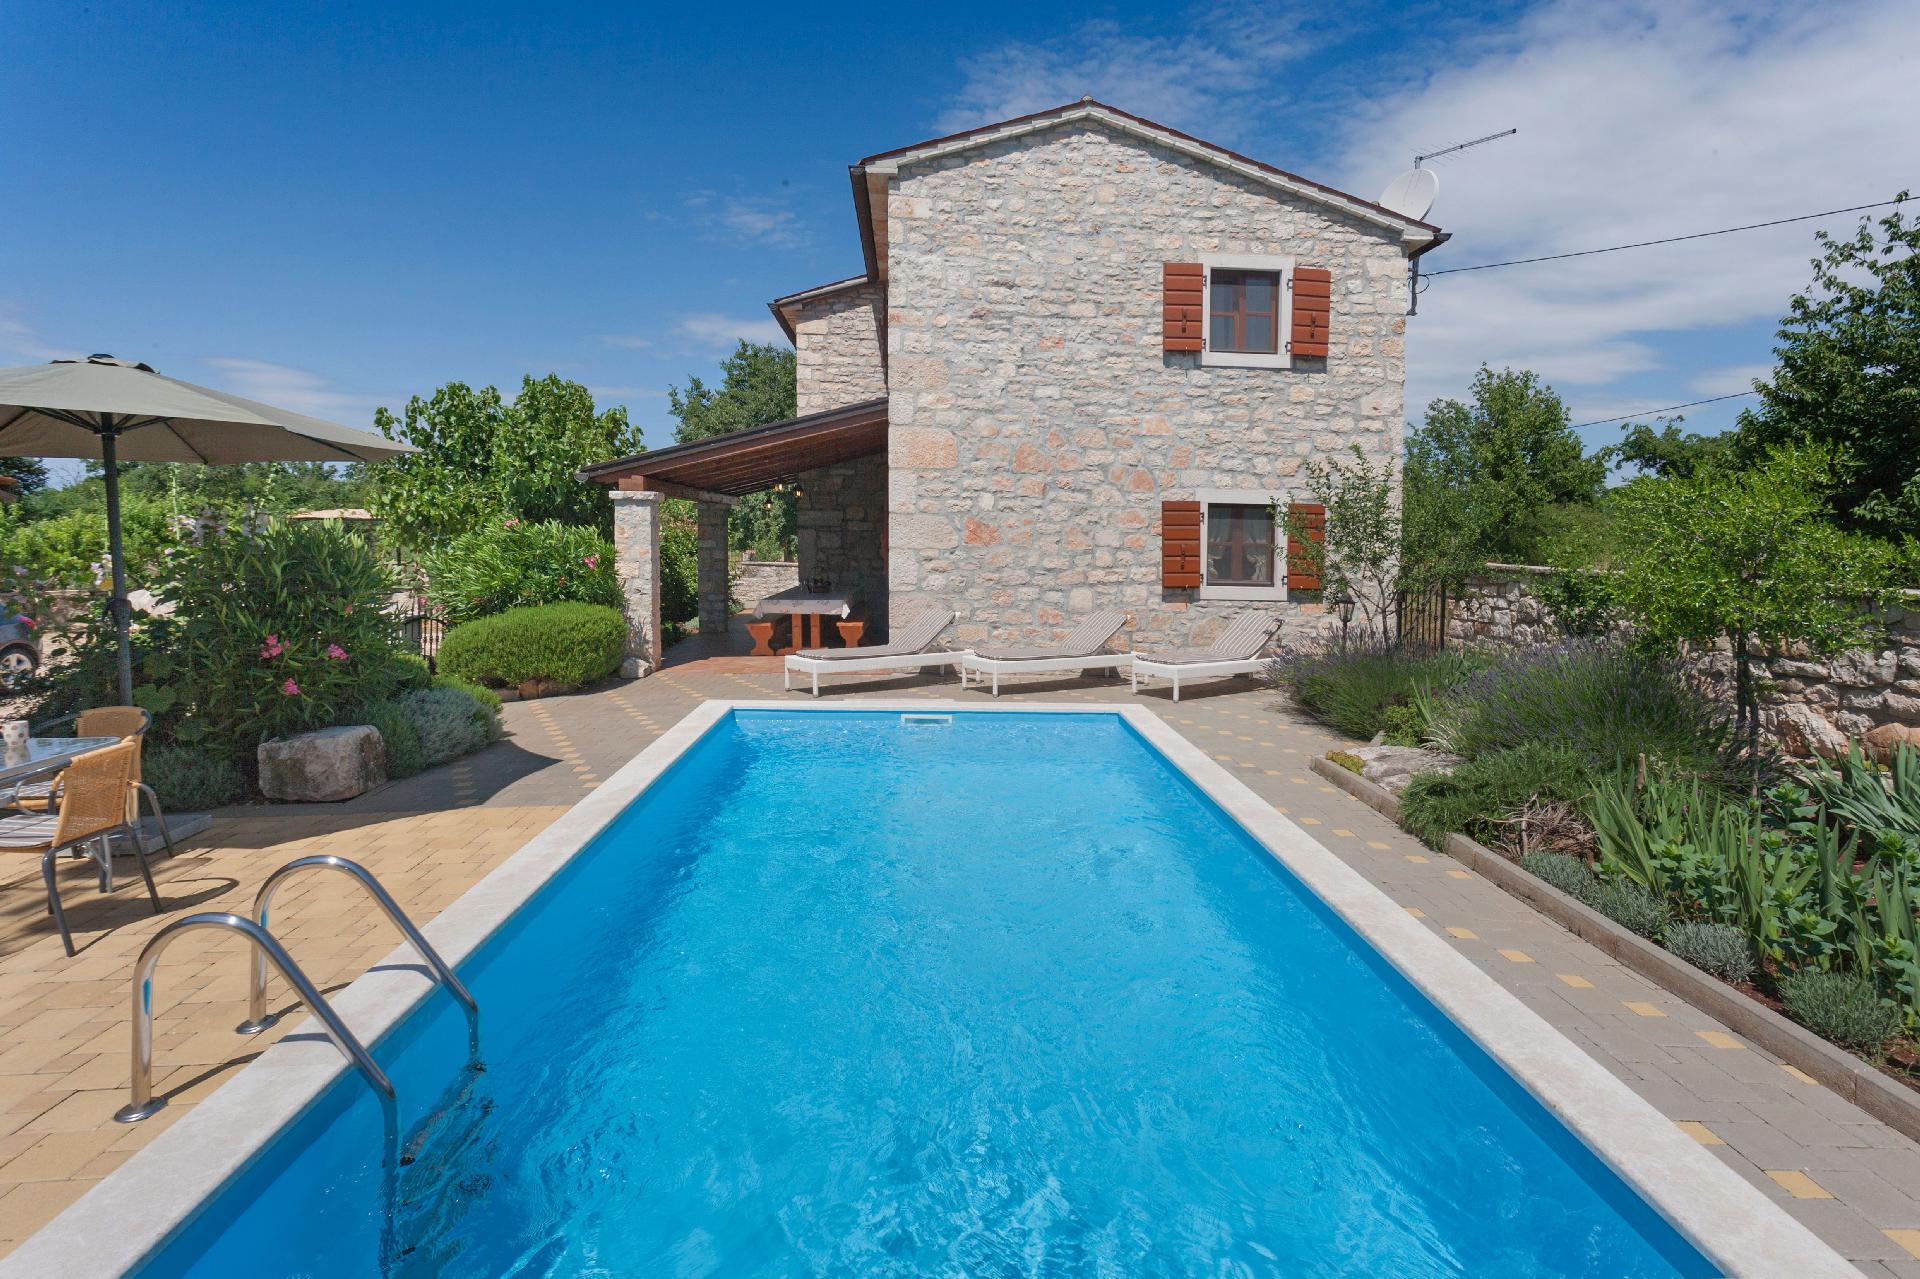 Ferienhaus mit Privatpool für 6 Personen ca.  Ferienhaus in Istrien